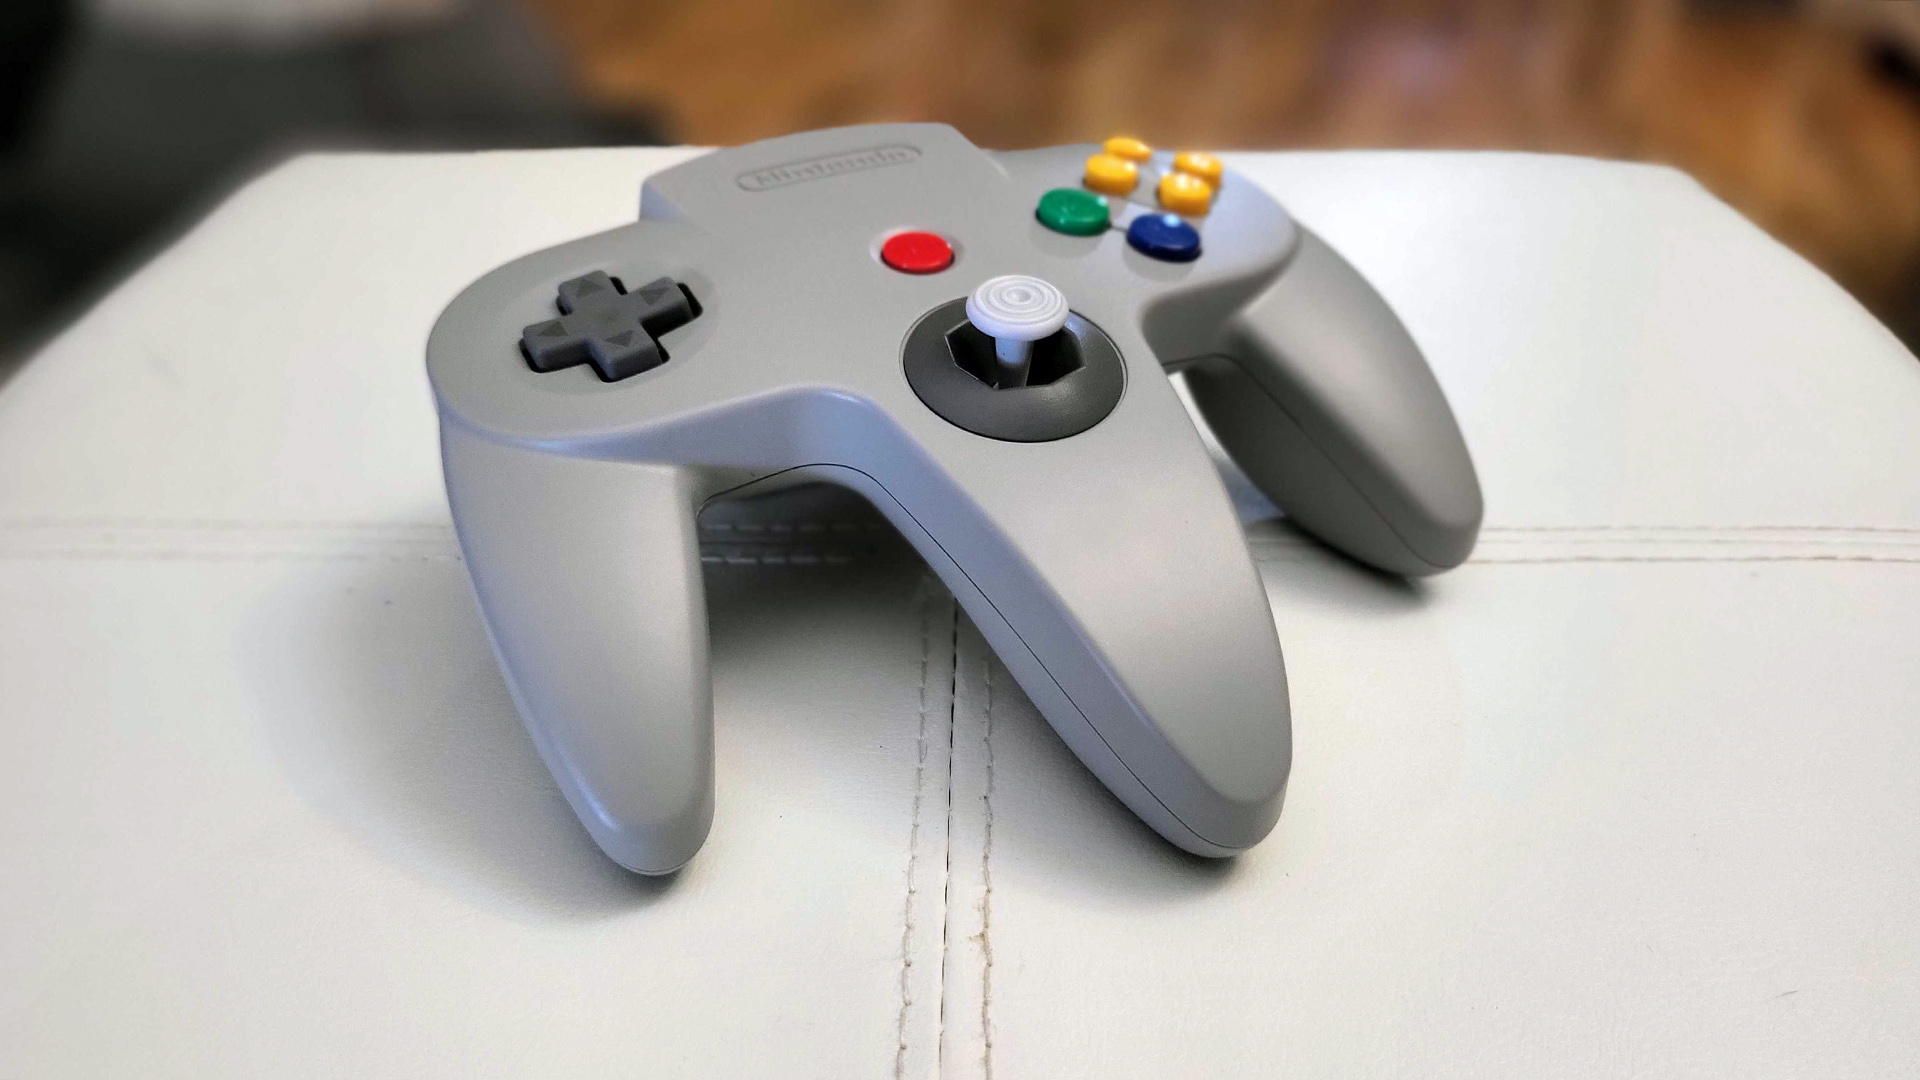 Nintendo's беспроводной контроллер 64 для Switch